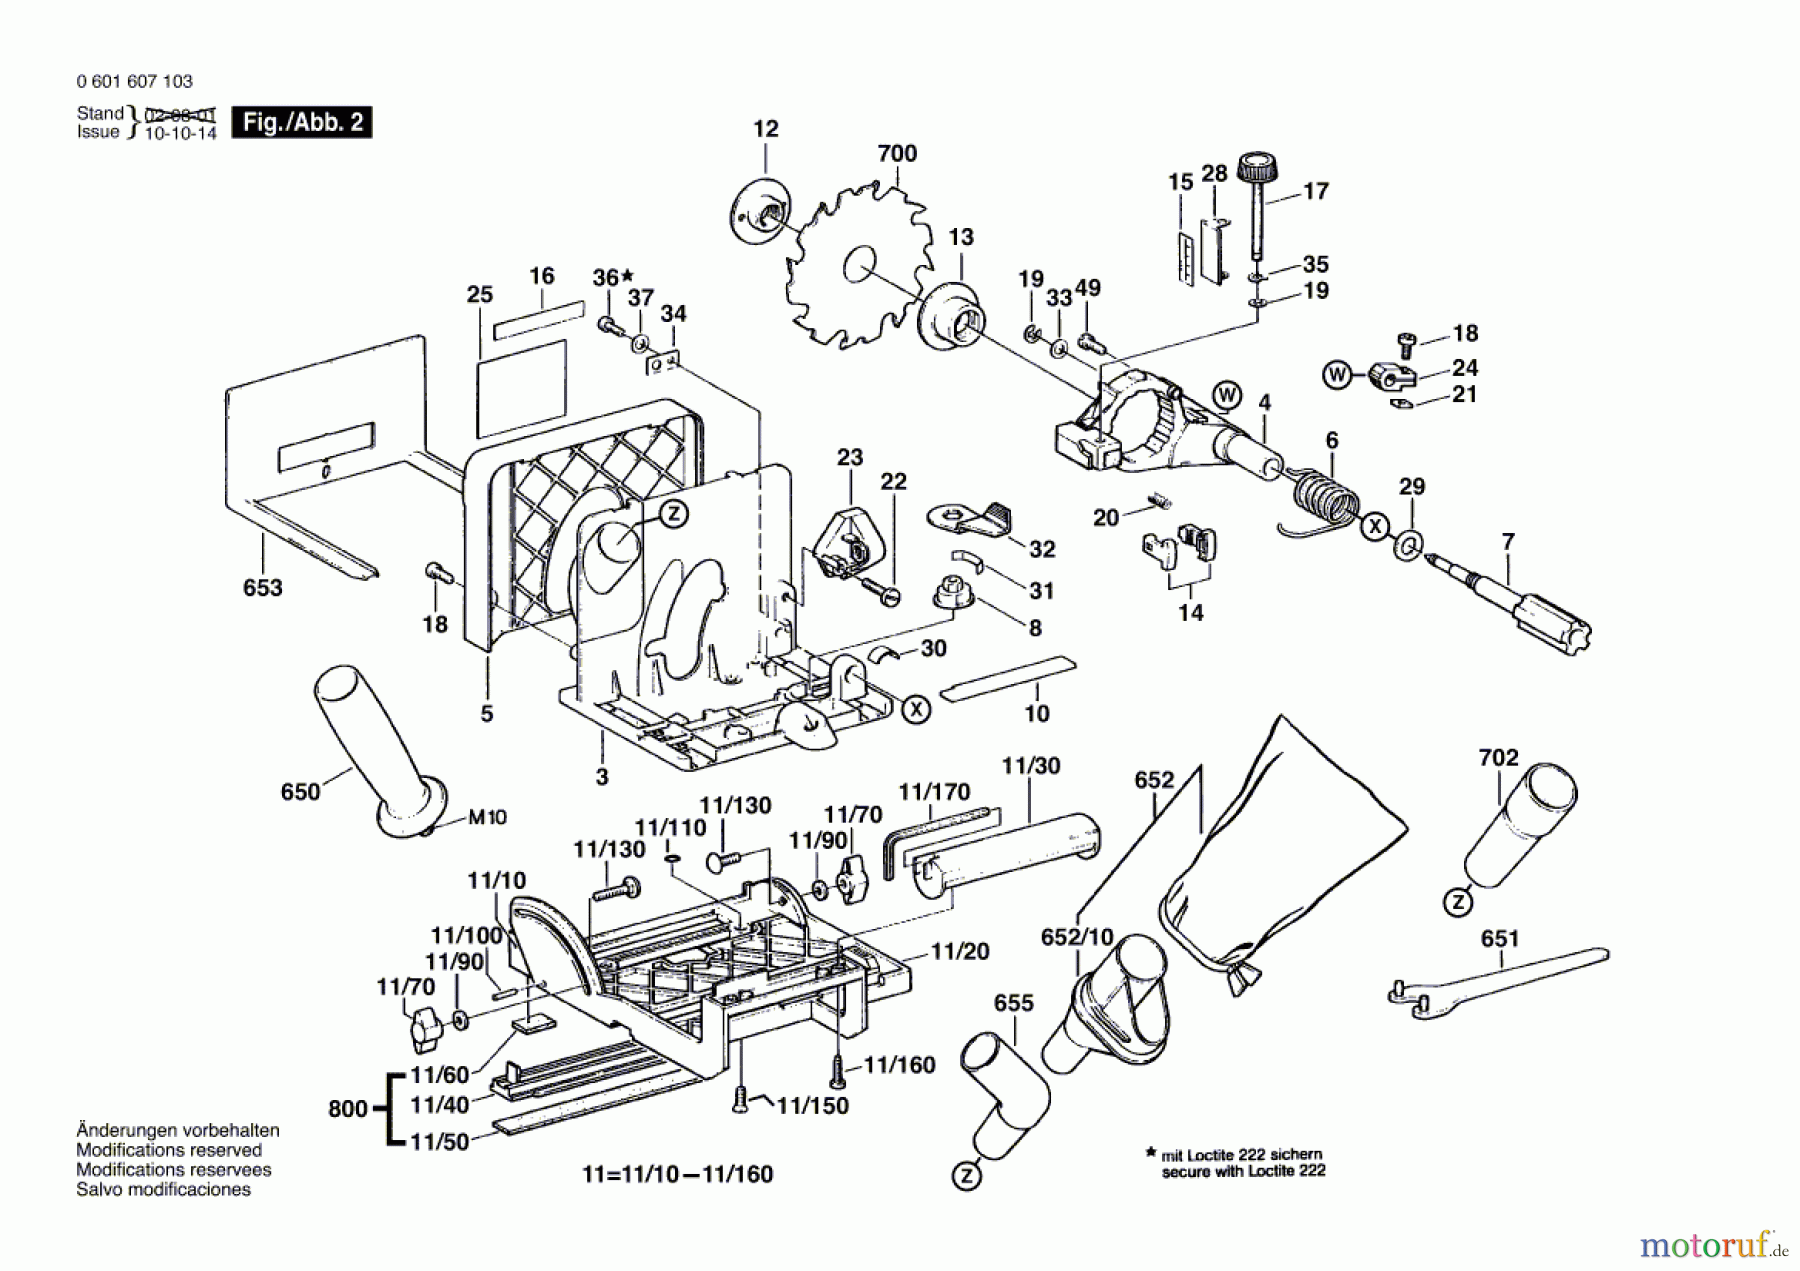  Bosch Werkzeug Universalfräse GUF 4-22 A Seite 2